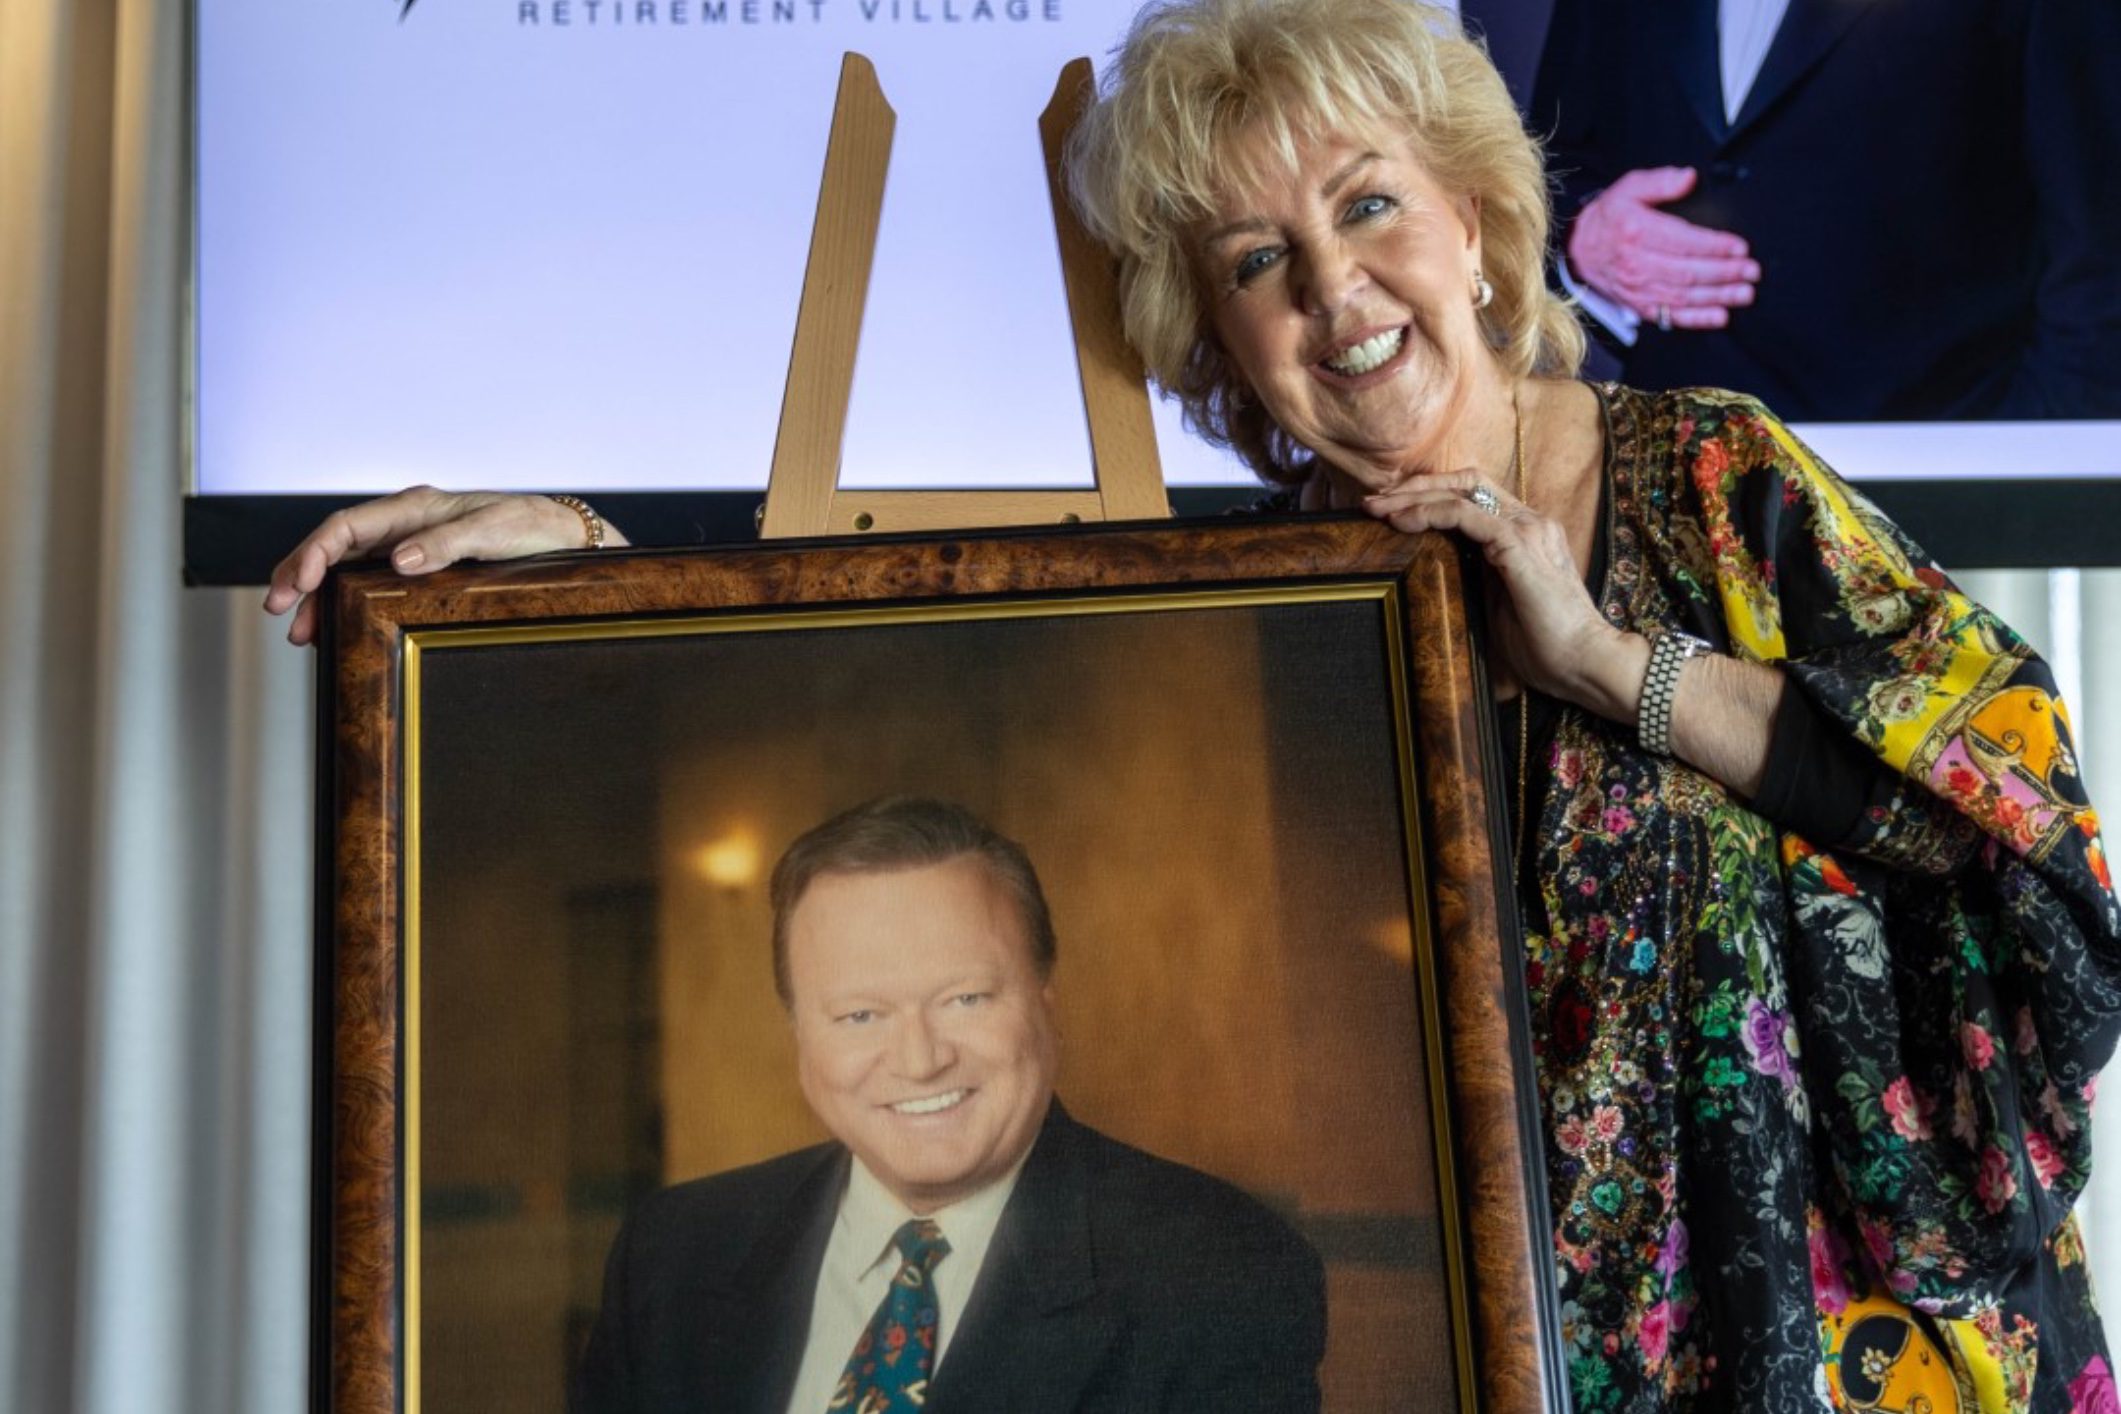 Retirement village honours Aussie entertainment royalty